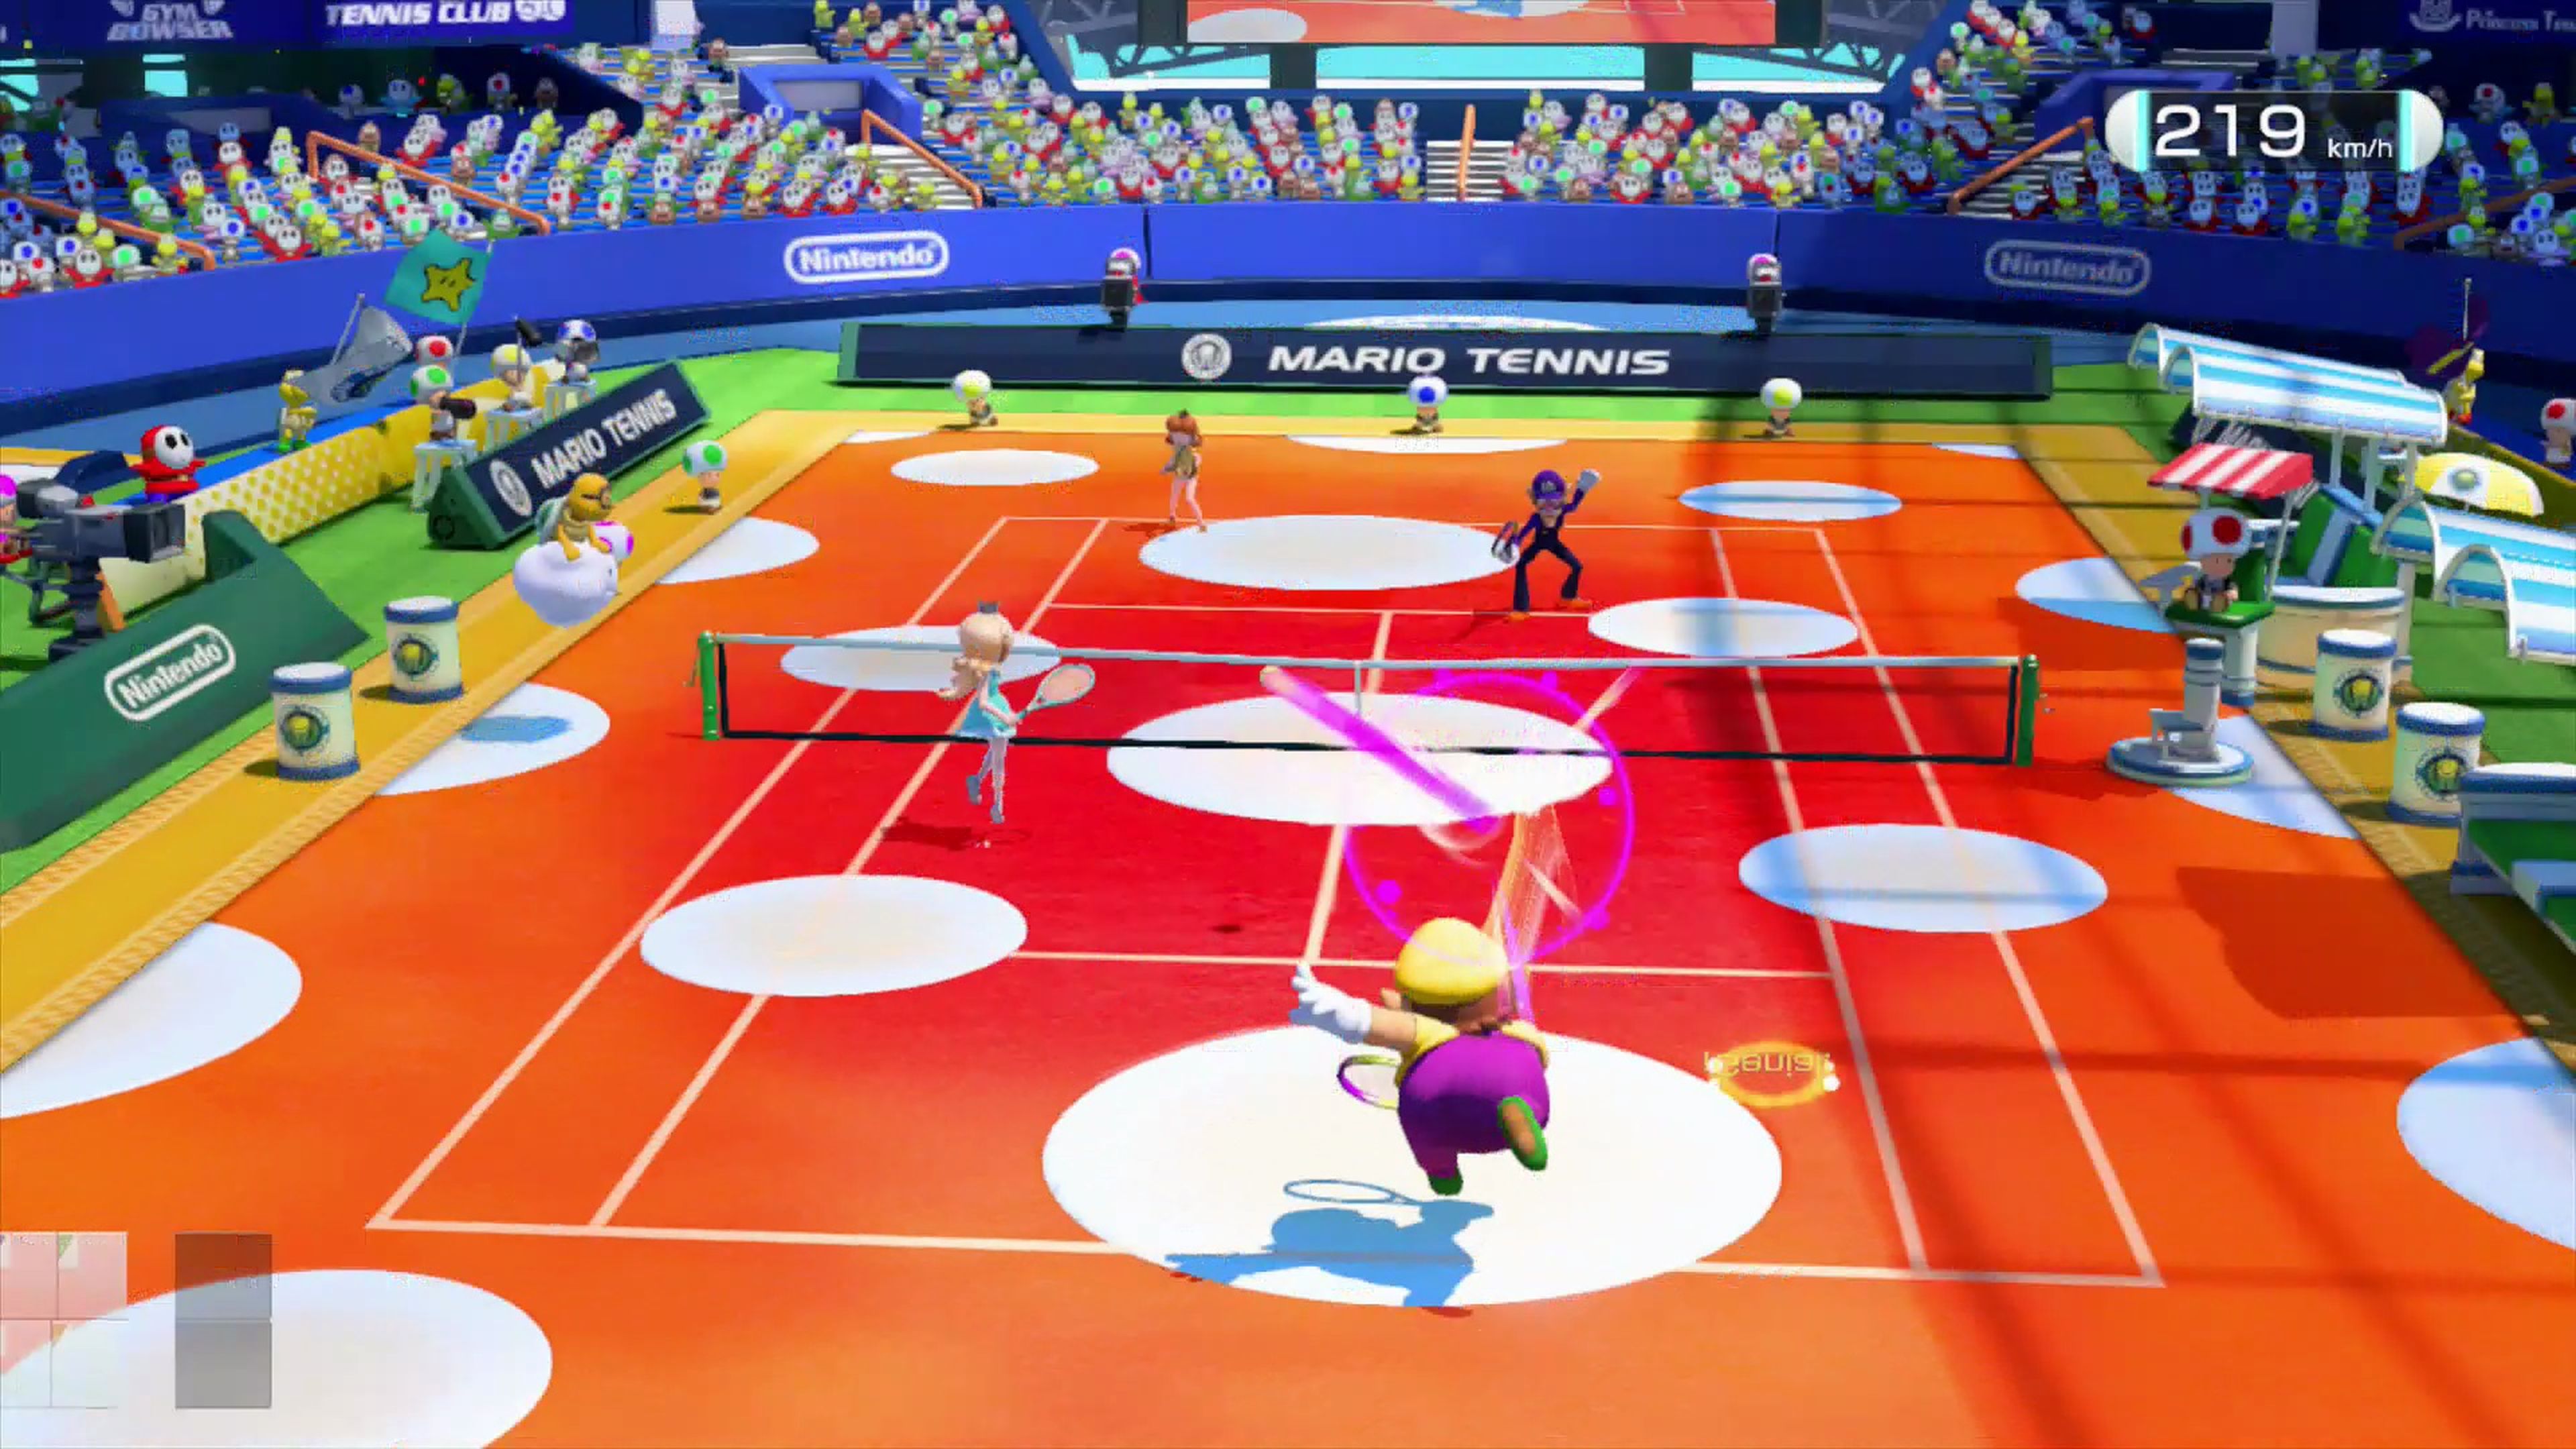 Análisis de Mario Tennis: Ultra Smash para Wii U